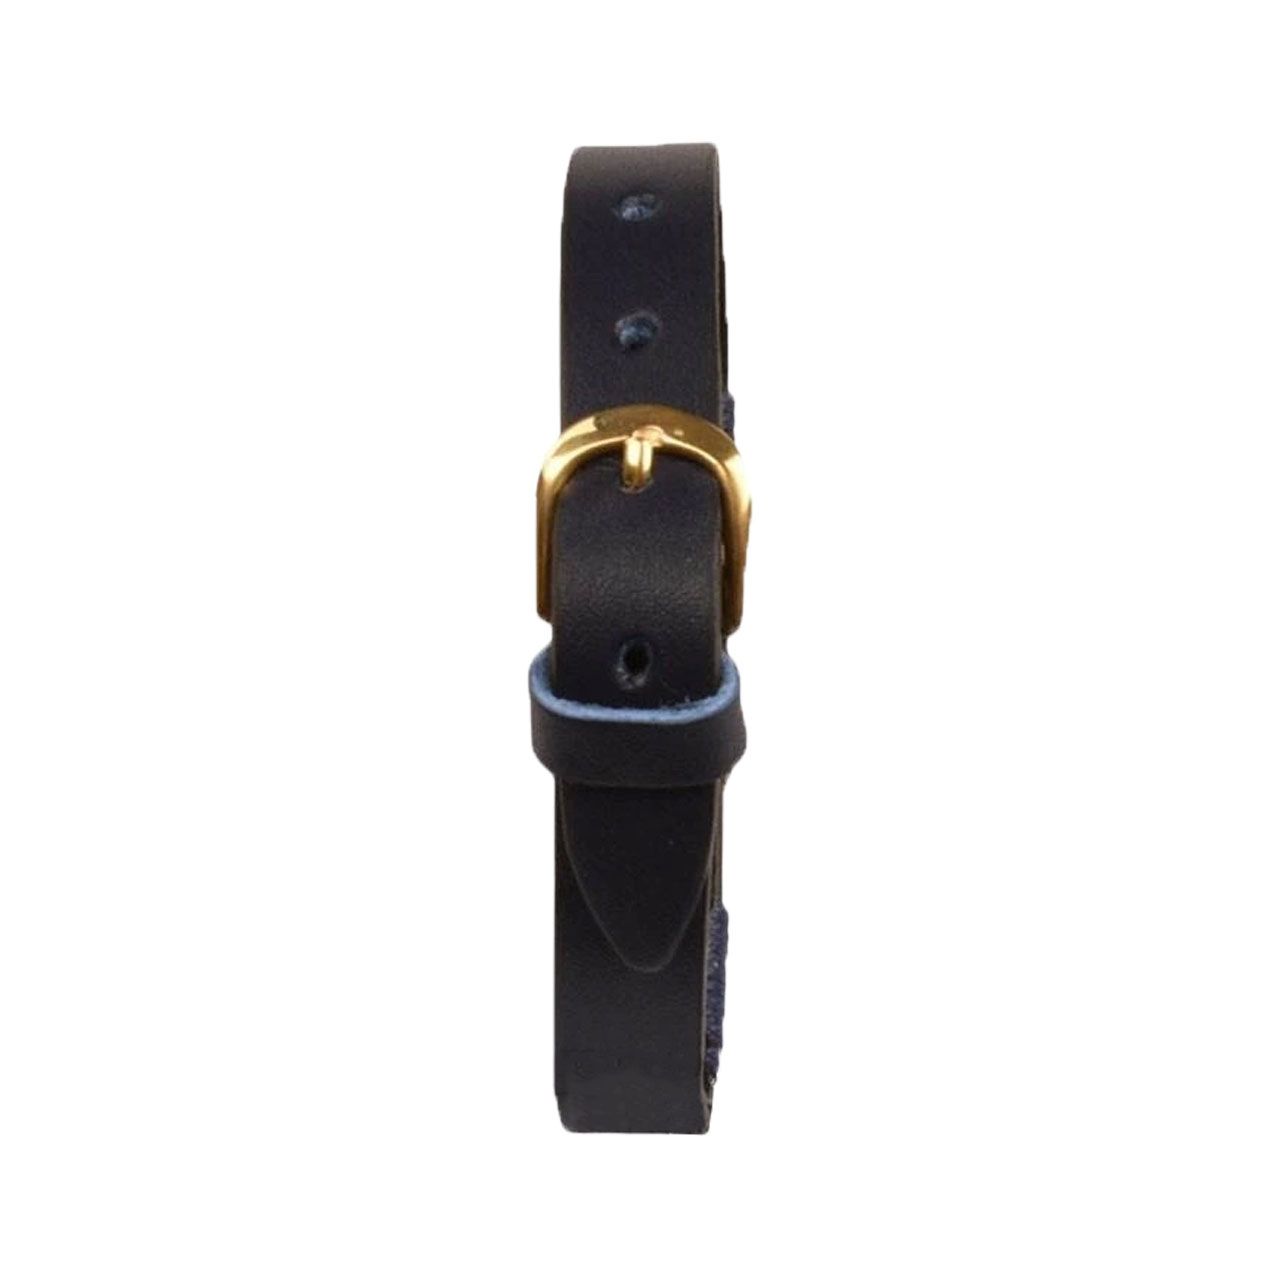 دستبند زنانه پارینه چرم طرح تولد فروردین مدل BR500106 -  - 7